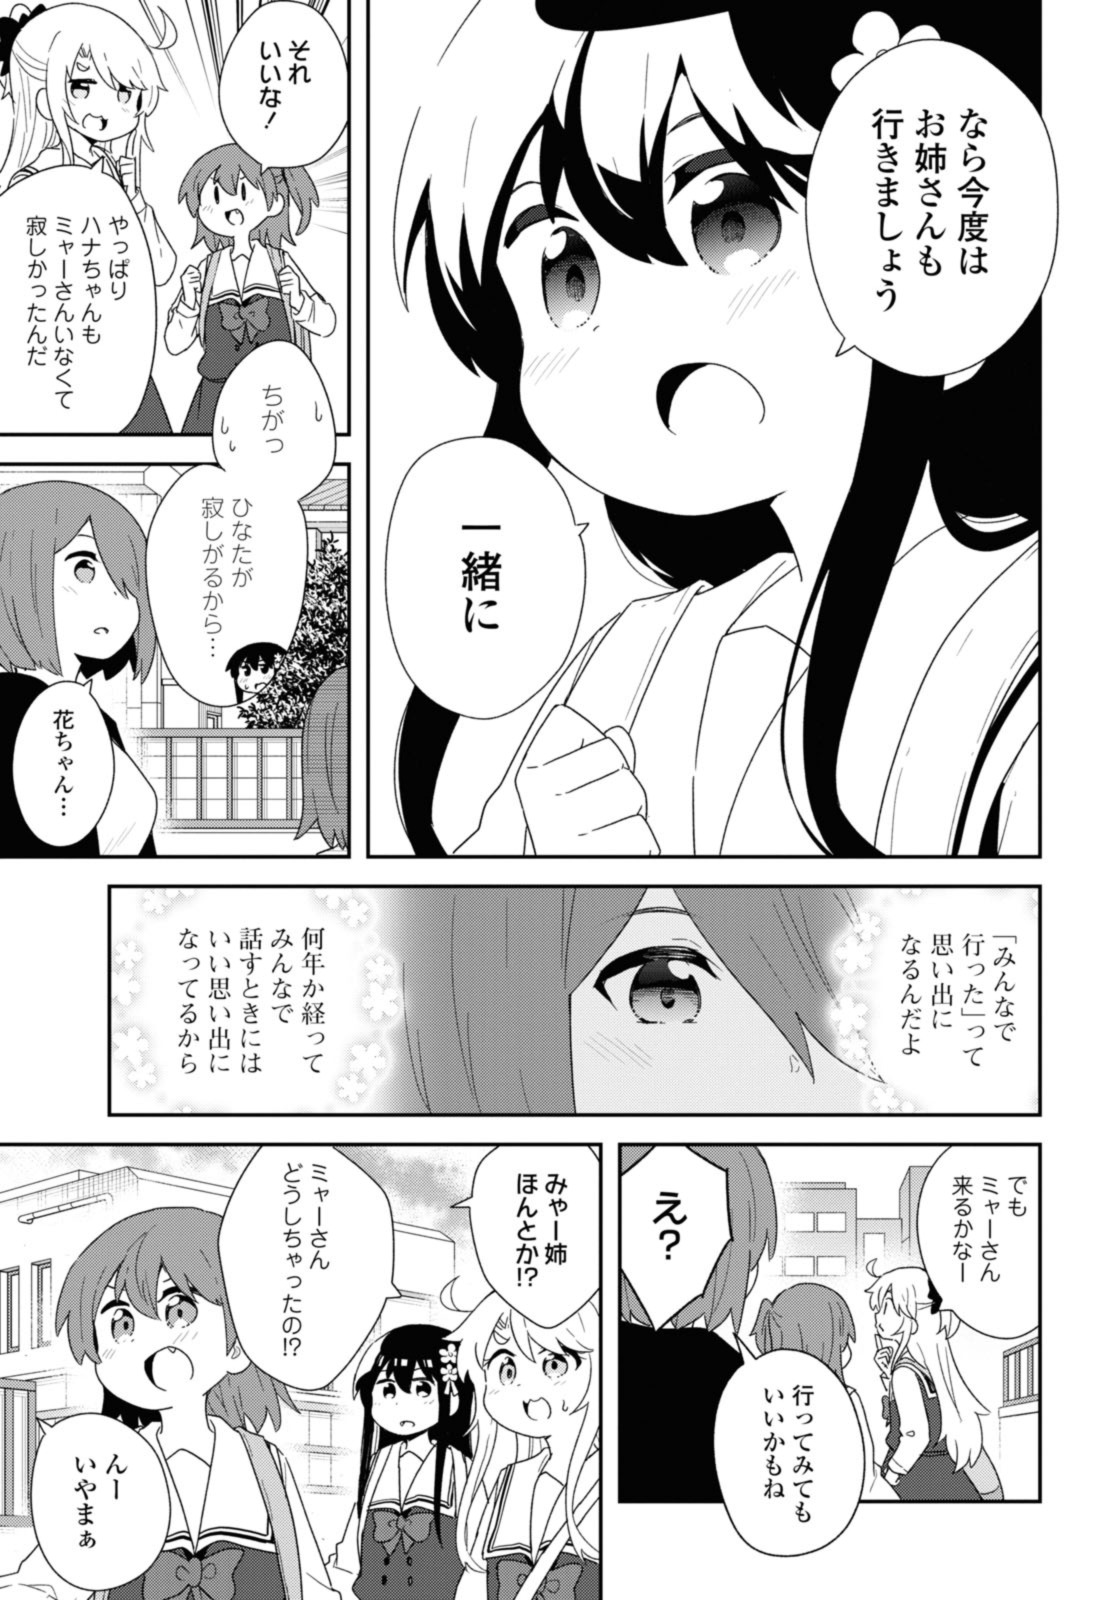 Watashi ni Tenshi ga Maiorita! - Chapter 107 - Page 15